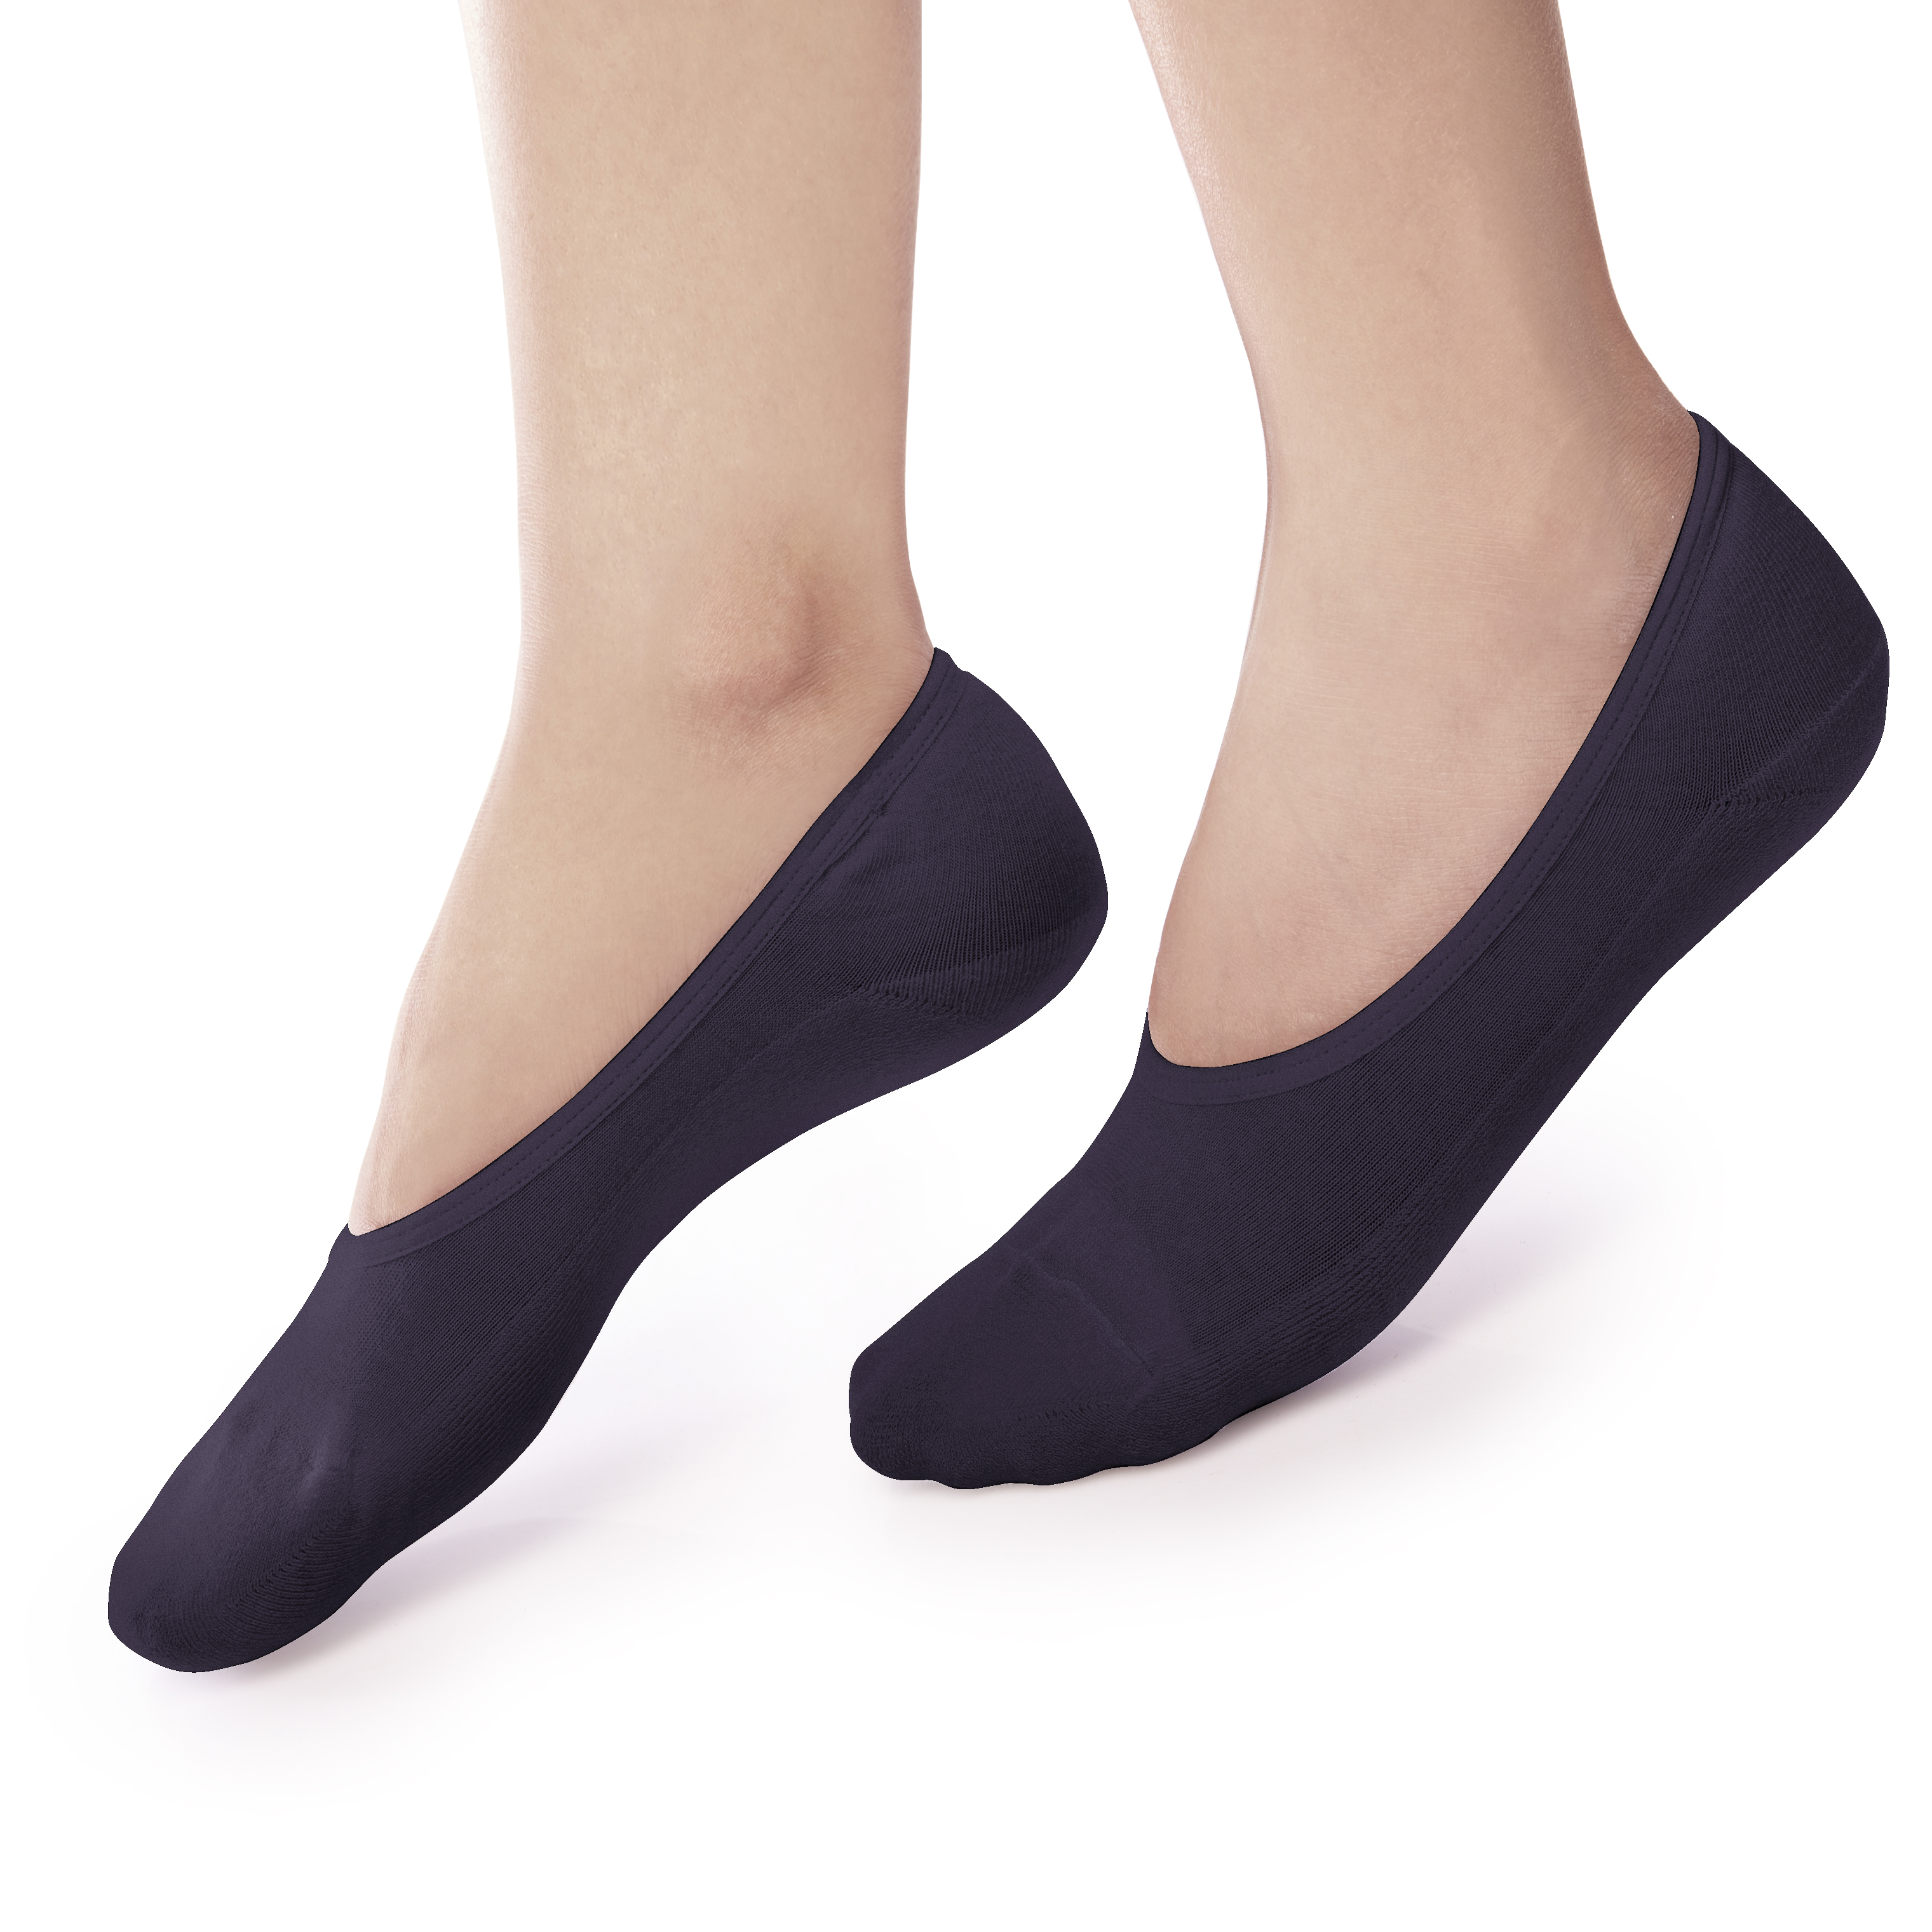 ถุงเท้ารองส้น แบบเปิดหน้าเท้า สีดำ รหัส NEFC01